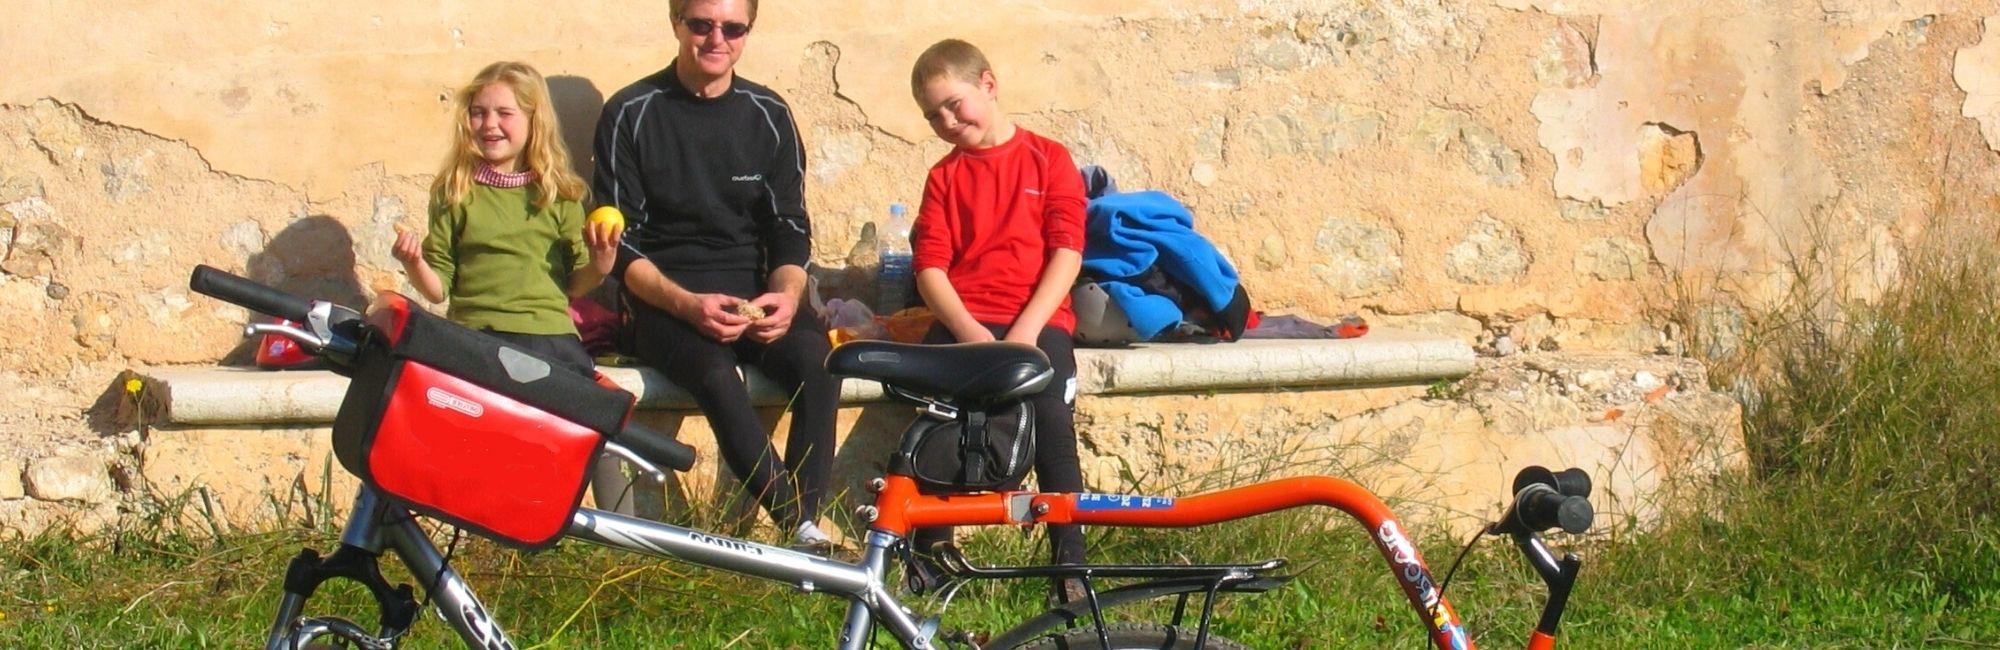 Padre con niños en bicicleta